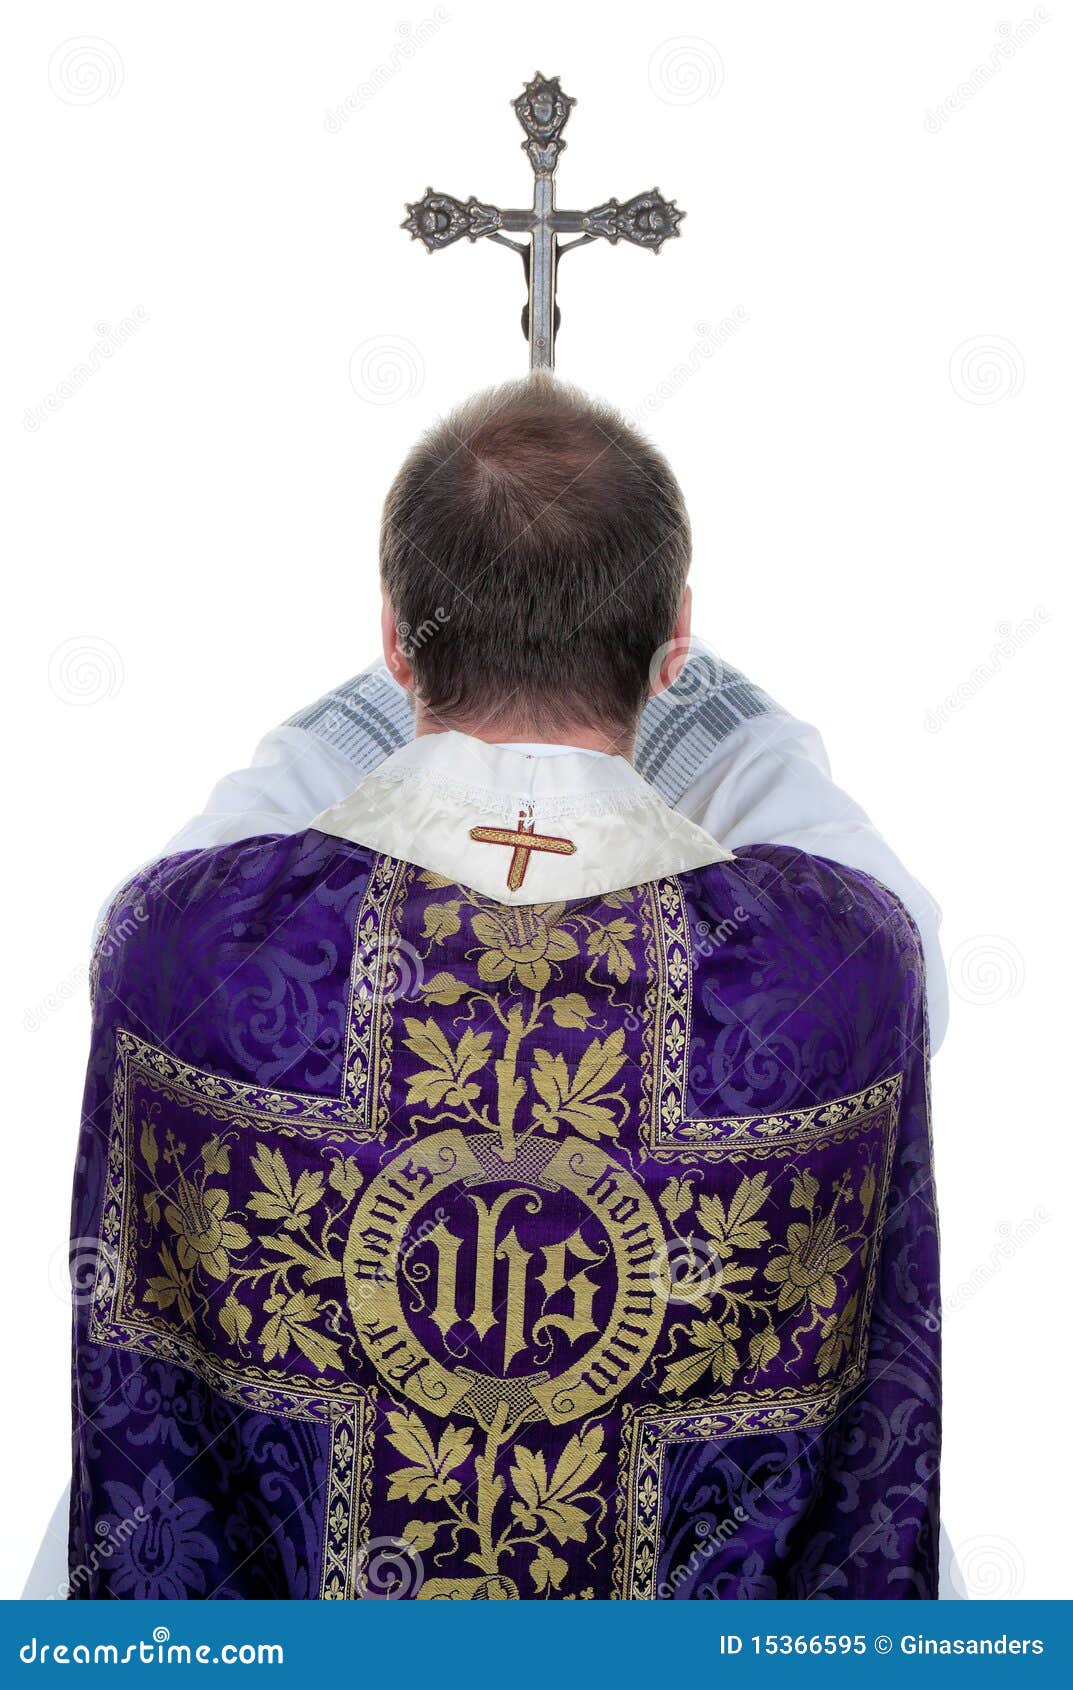 catholic priests pray